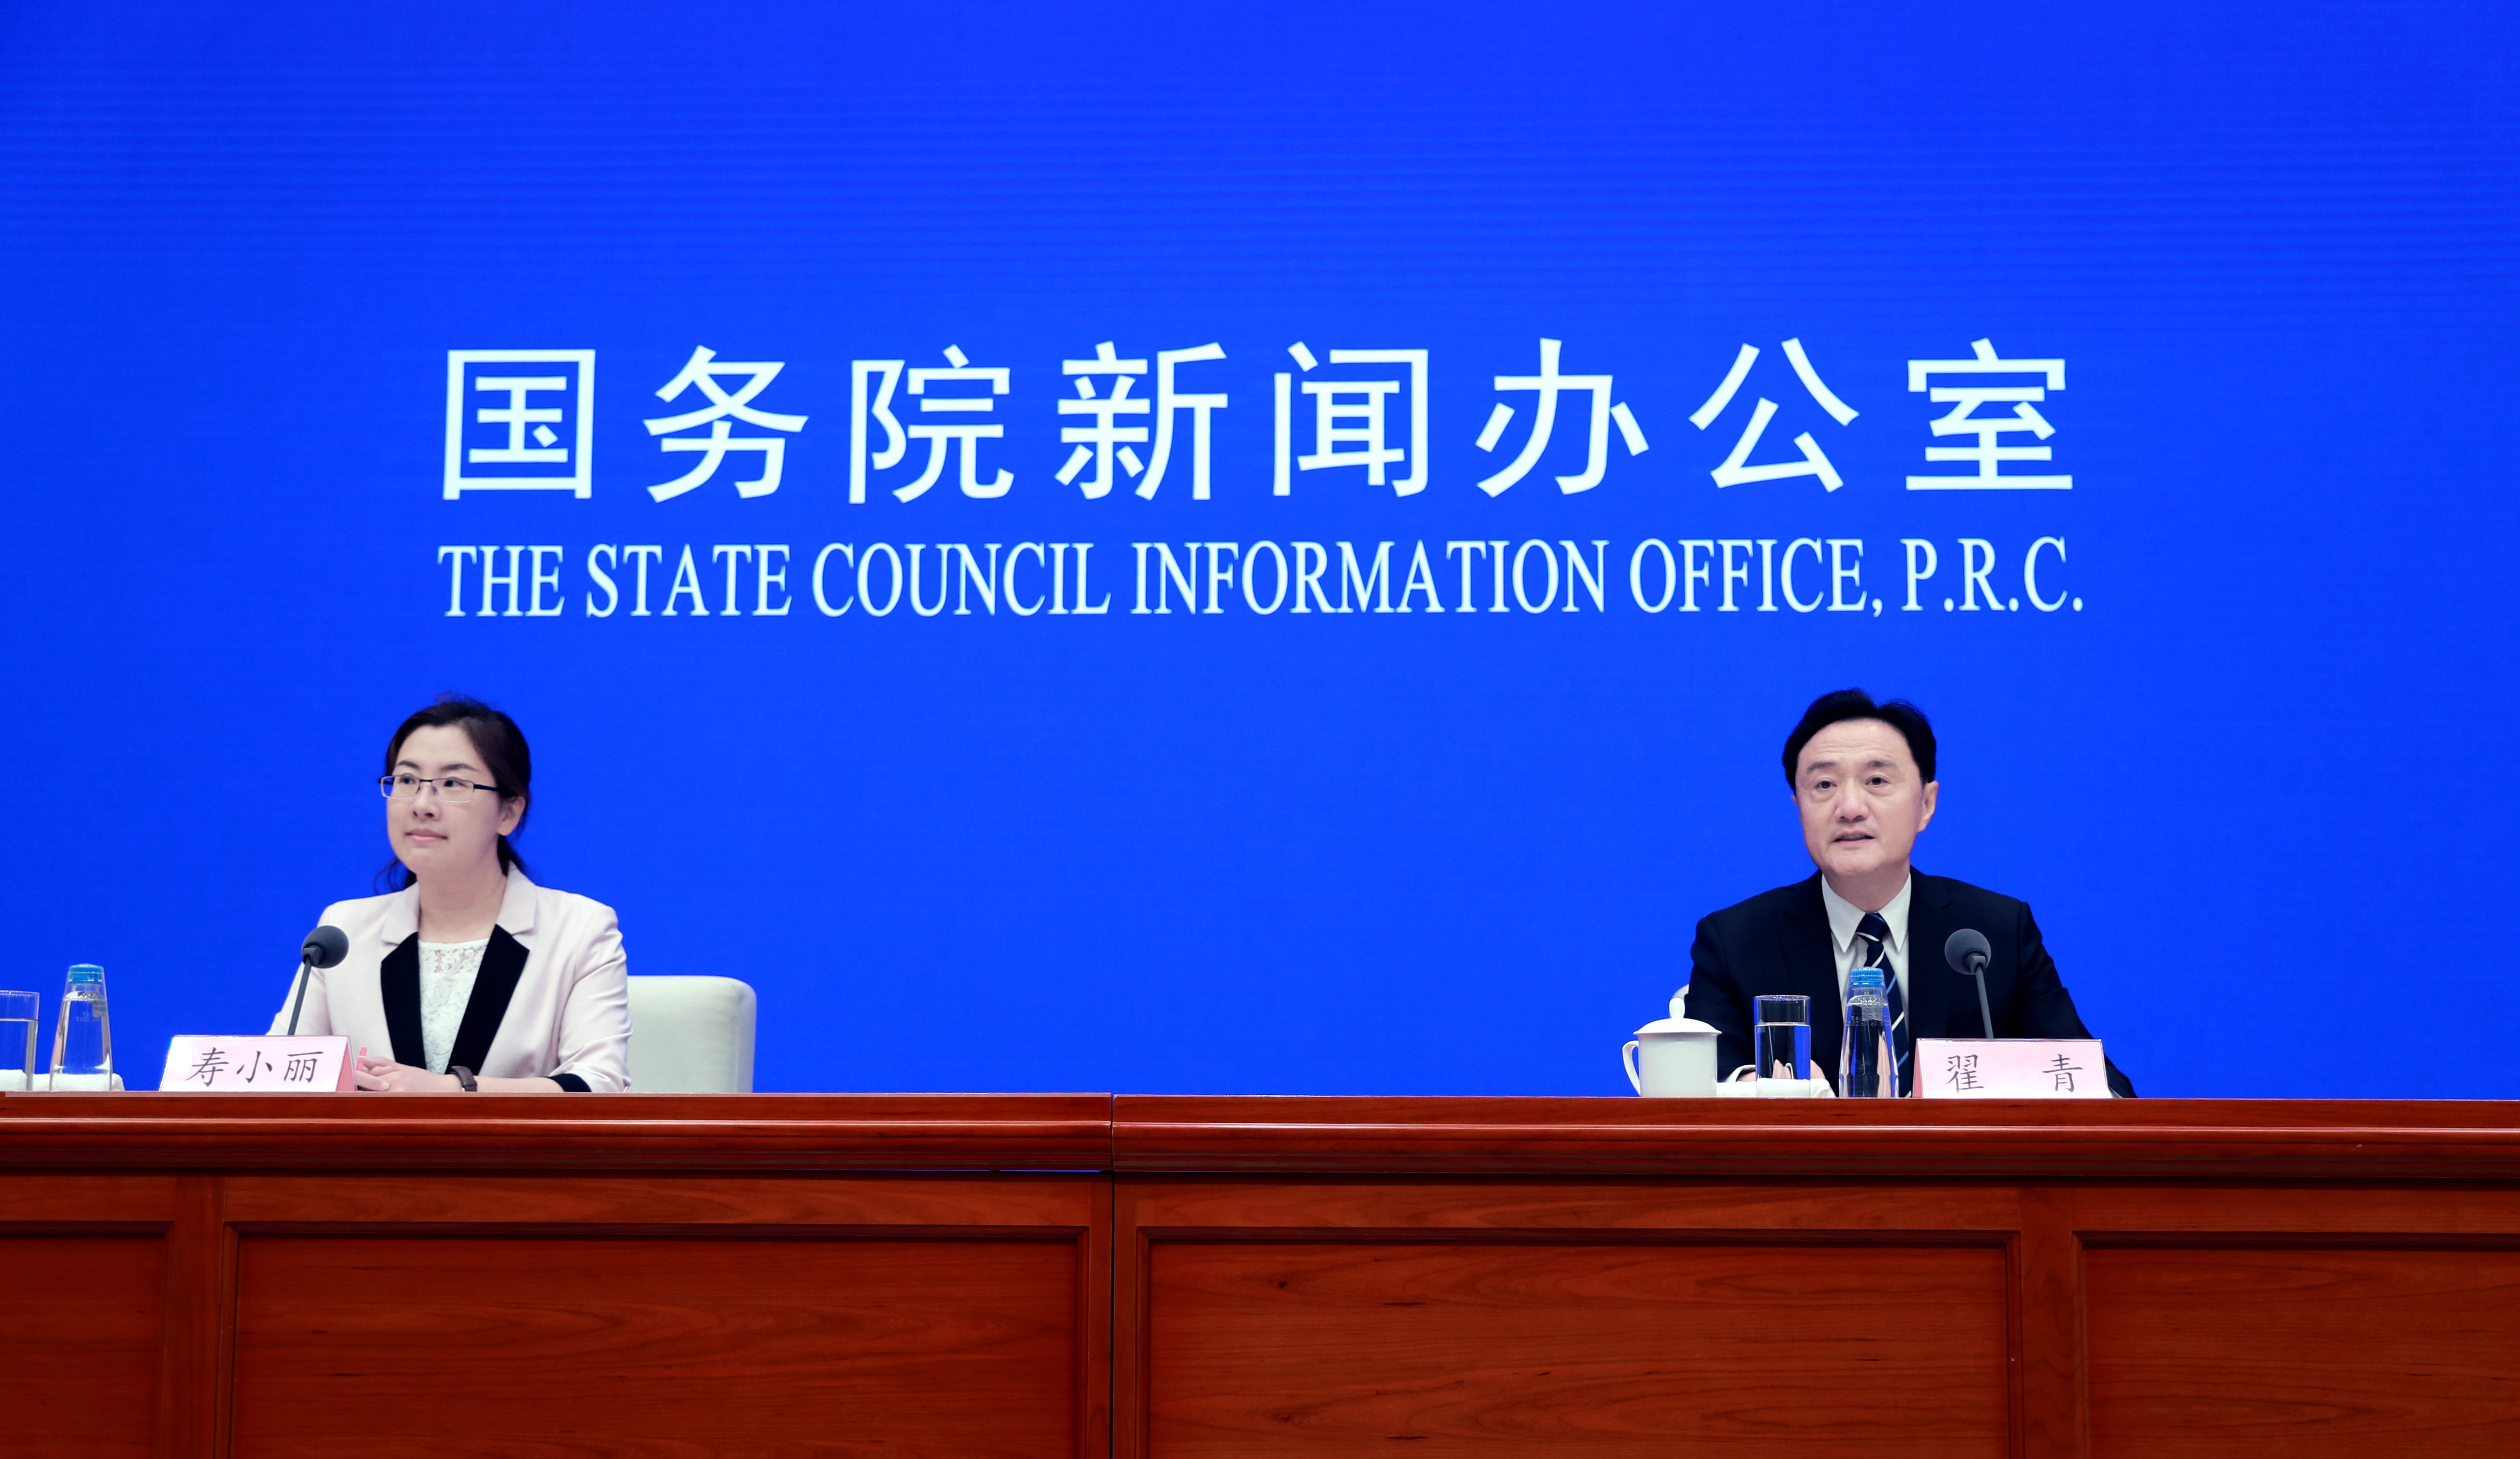 国务院新闻办公室在北京举行新闻发布会,请生态环境部副部长翟青介绍